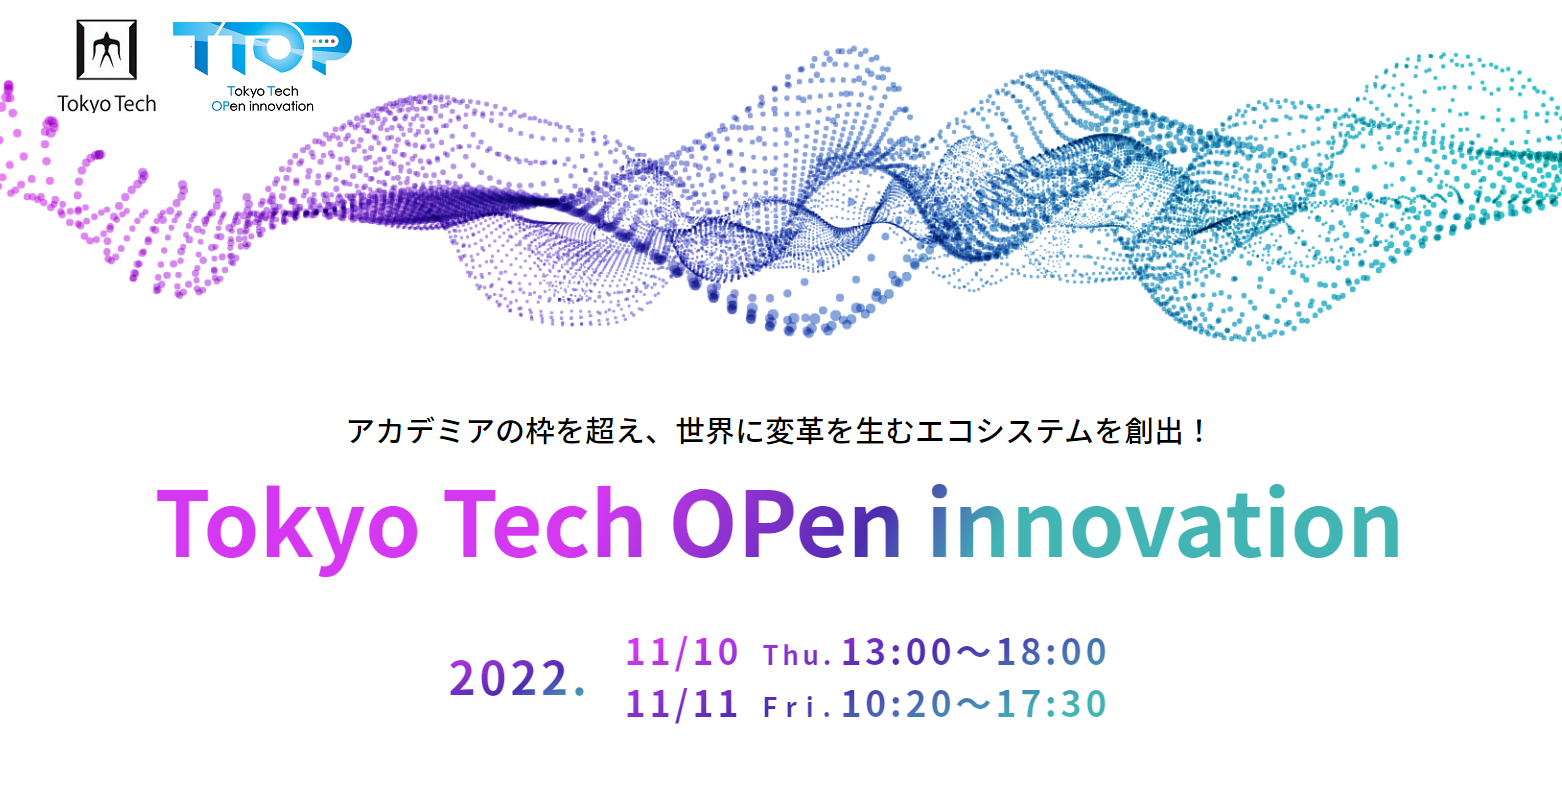 東工大最大級の産学連携イベント「Tokyo Tech OPen innovation & venture/research festival (TTOP) 2021」の開催報告を掲載しました。